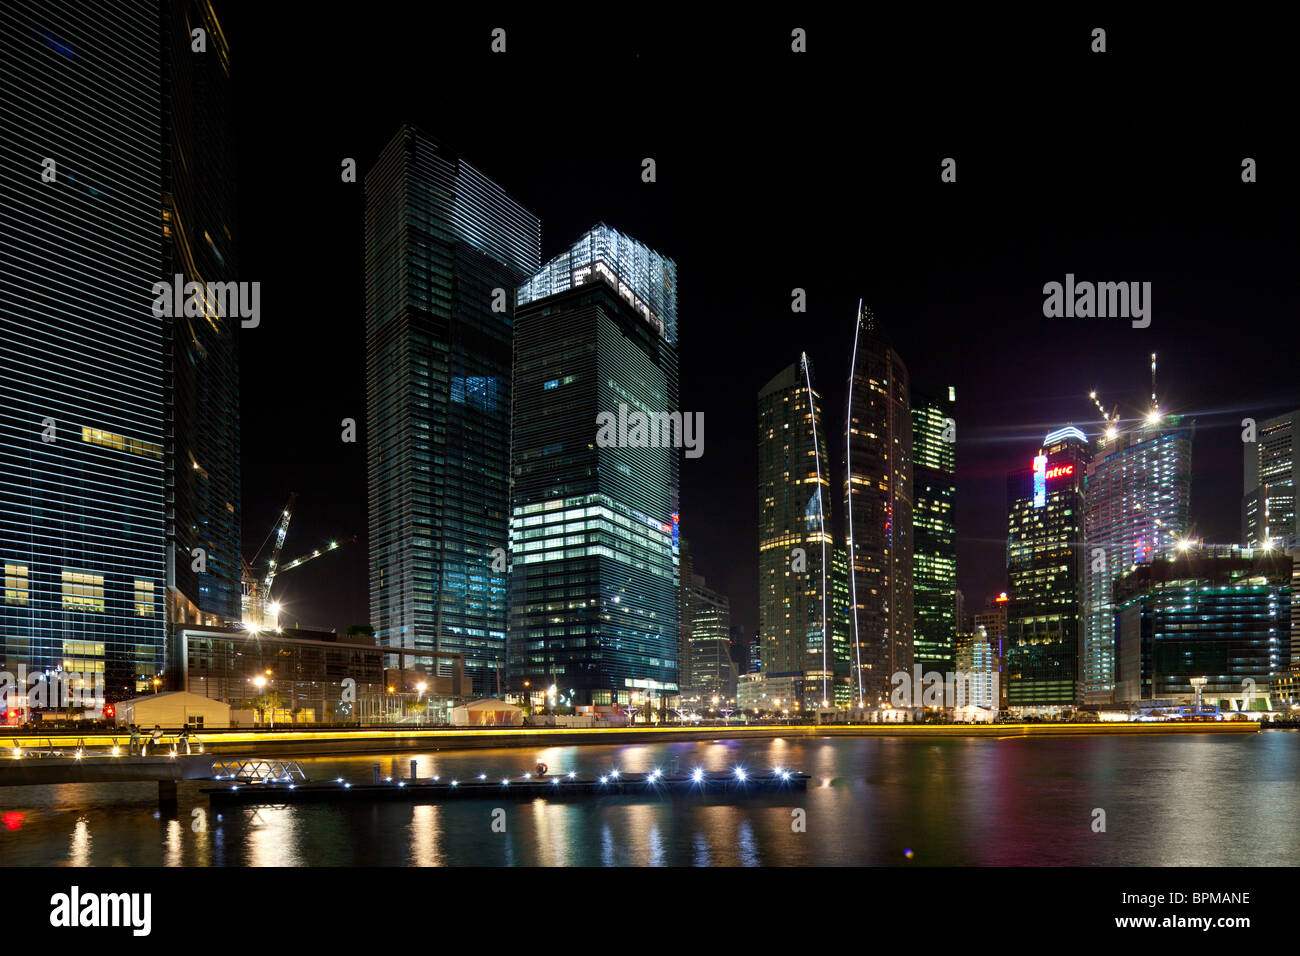 view of buildings around Marina Bay Singapore, at night Stock Photo